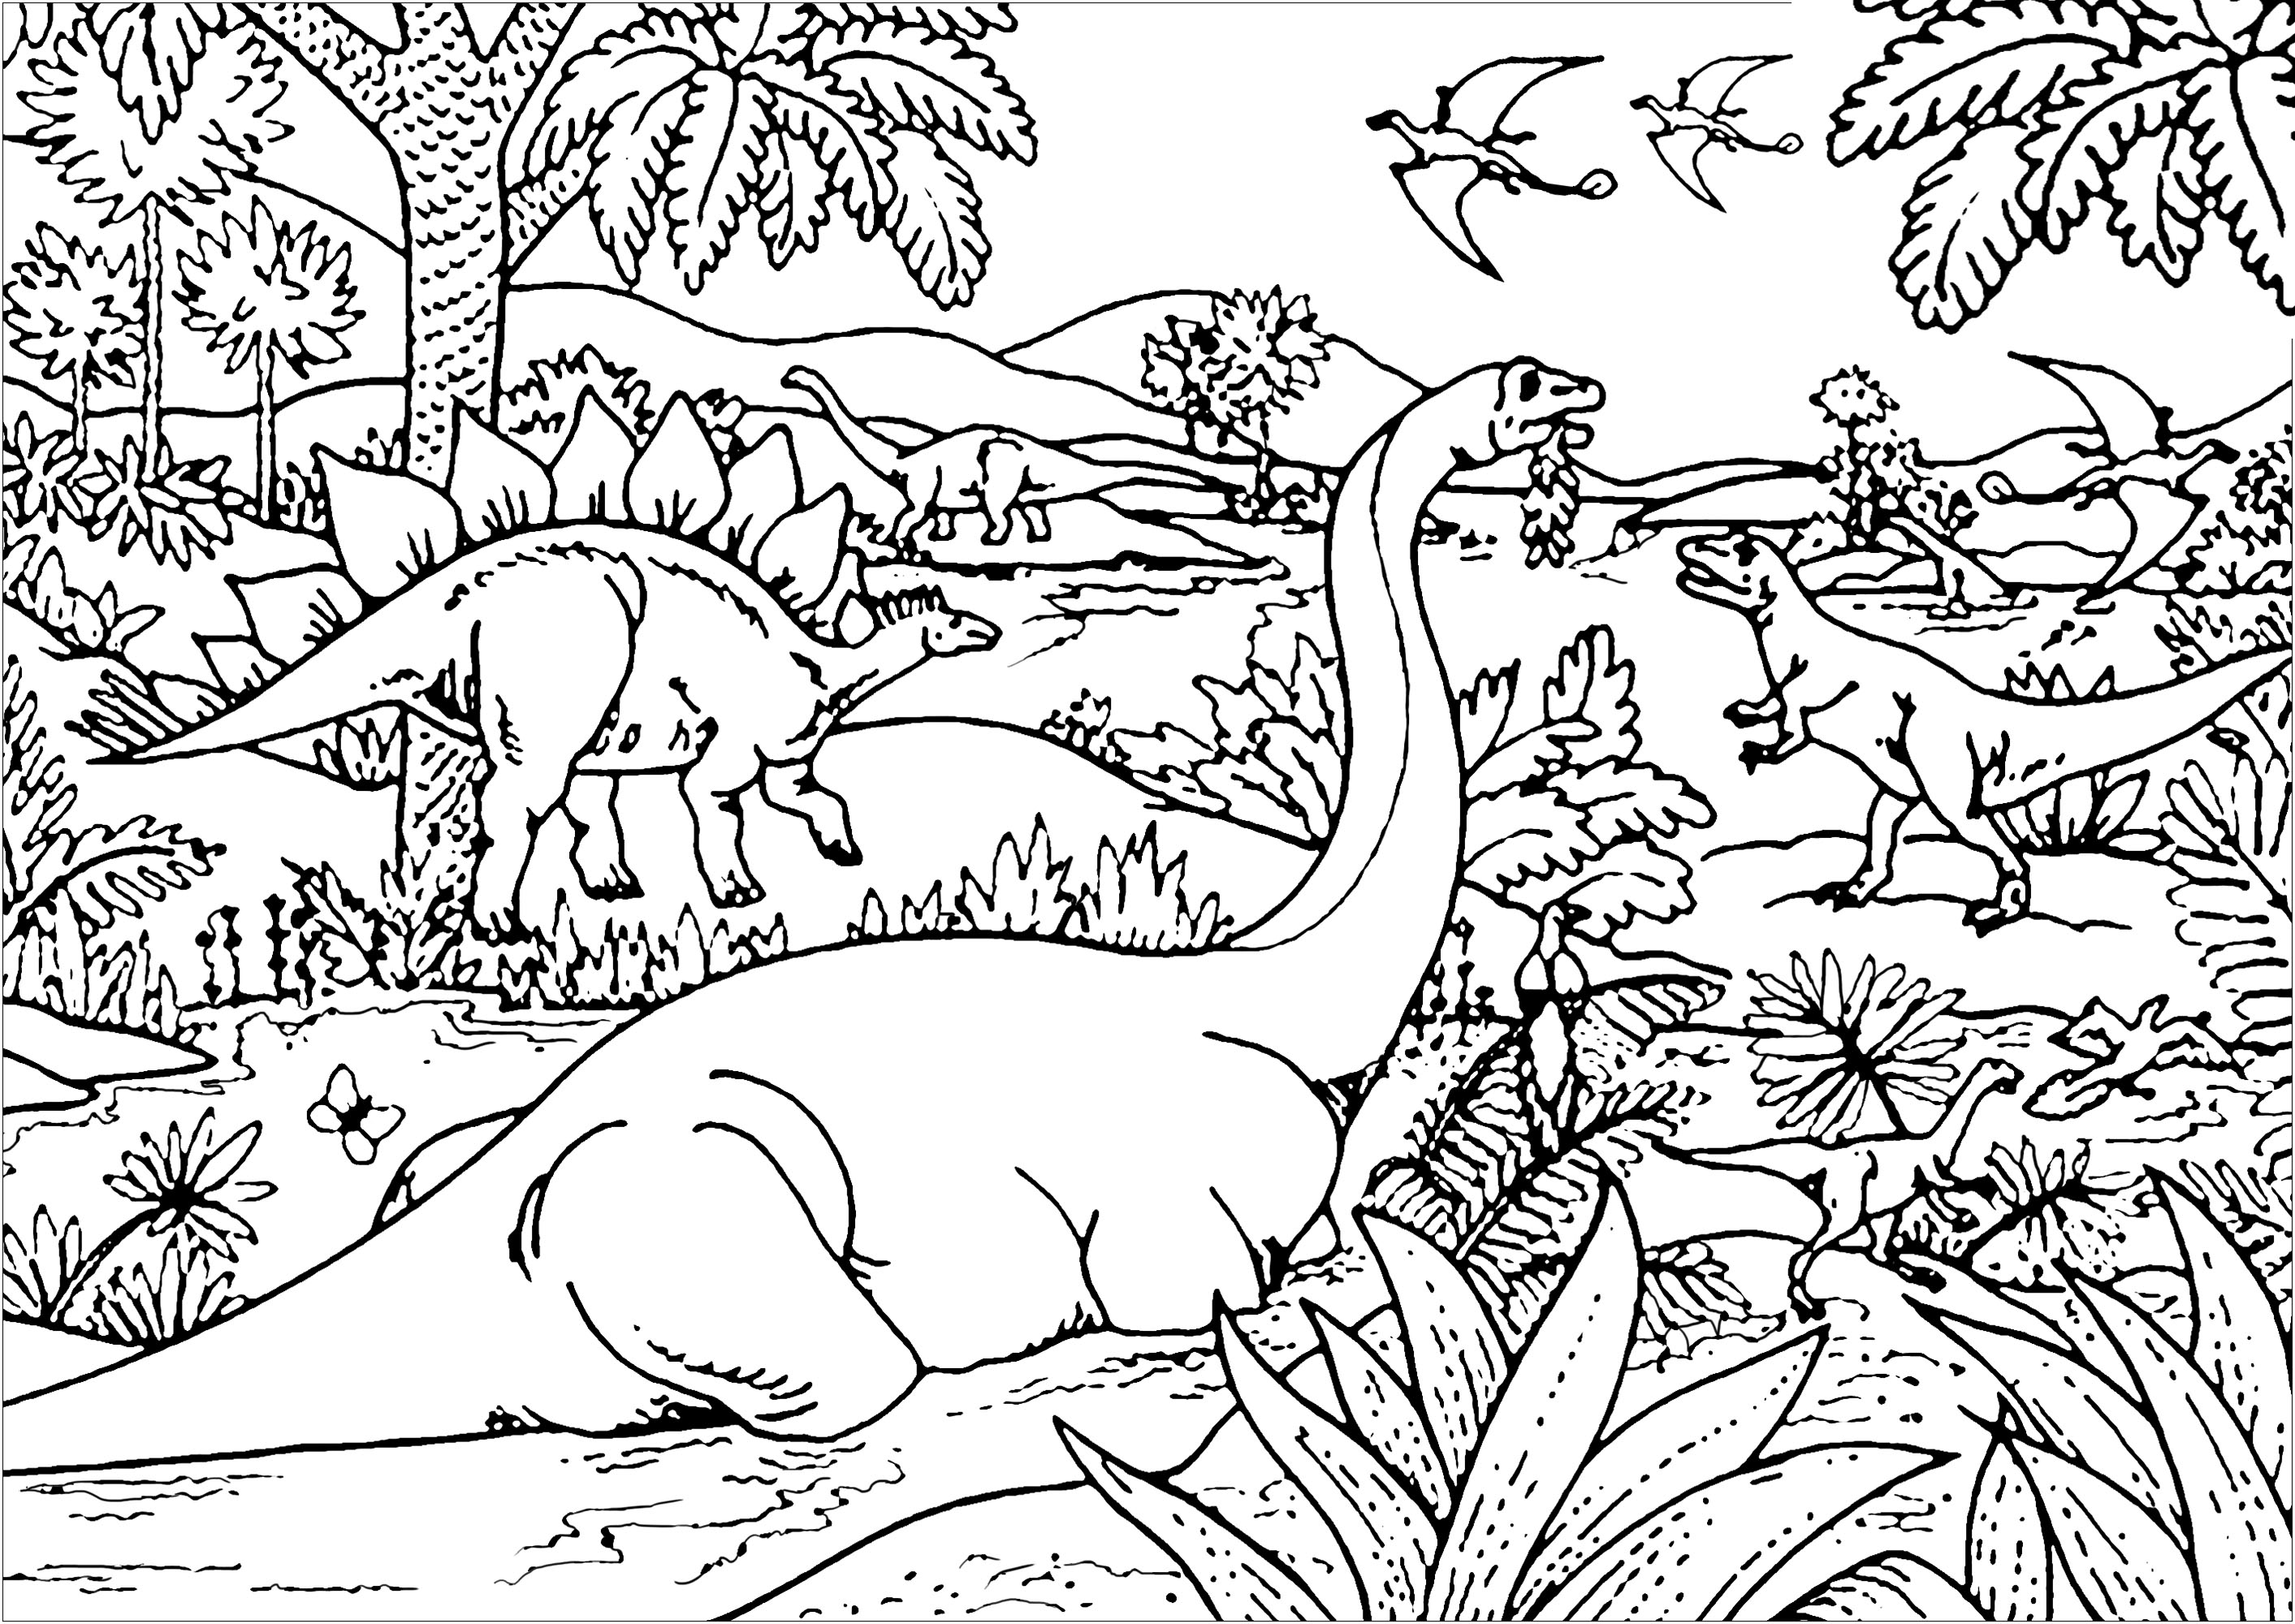 Diferentes tipos de dinossauros: Diplodocus, Tiranossauro, Estegossauro, Pterodáctilo ... Foram encontrados fósseis de dinossauros em todos os sete continentes. Todos os dinossauros não aviários foram extintos há cerca de 66 milhões de anos.Existem cerca de 700 espécies conhecidas de dinossauros extintos, Artista : Art'Isabelle